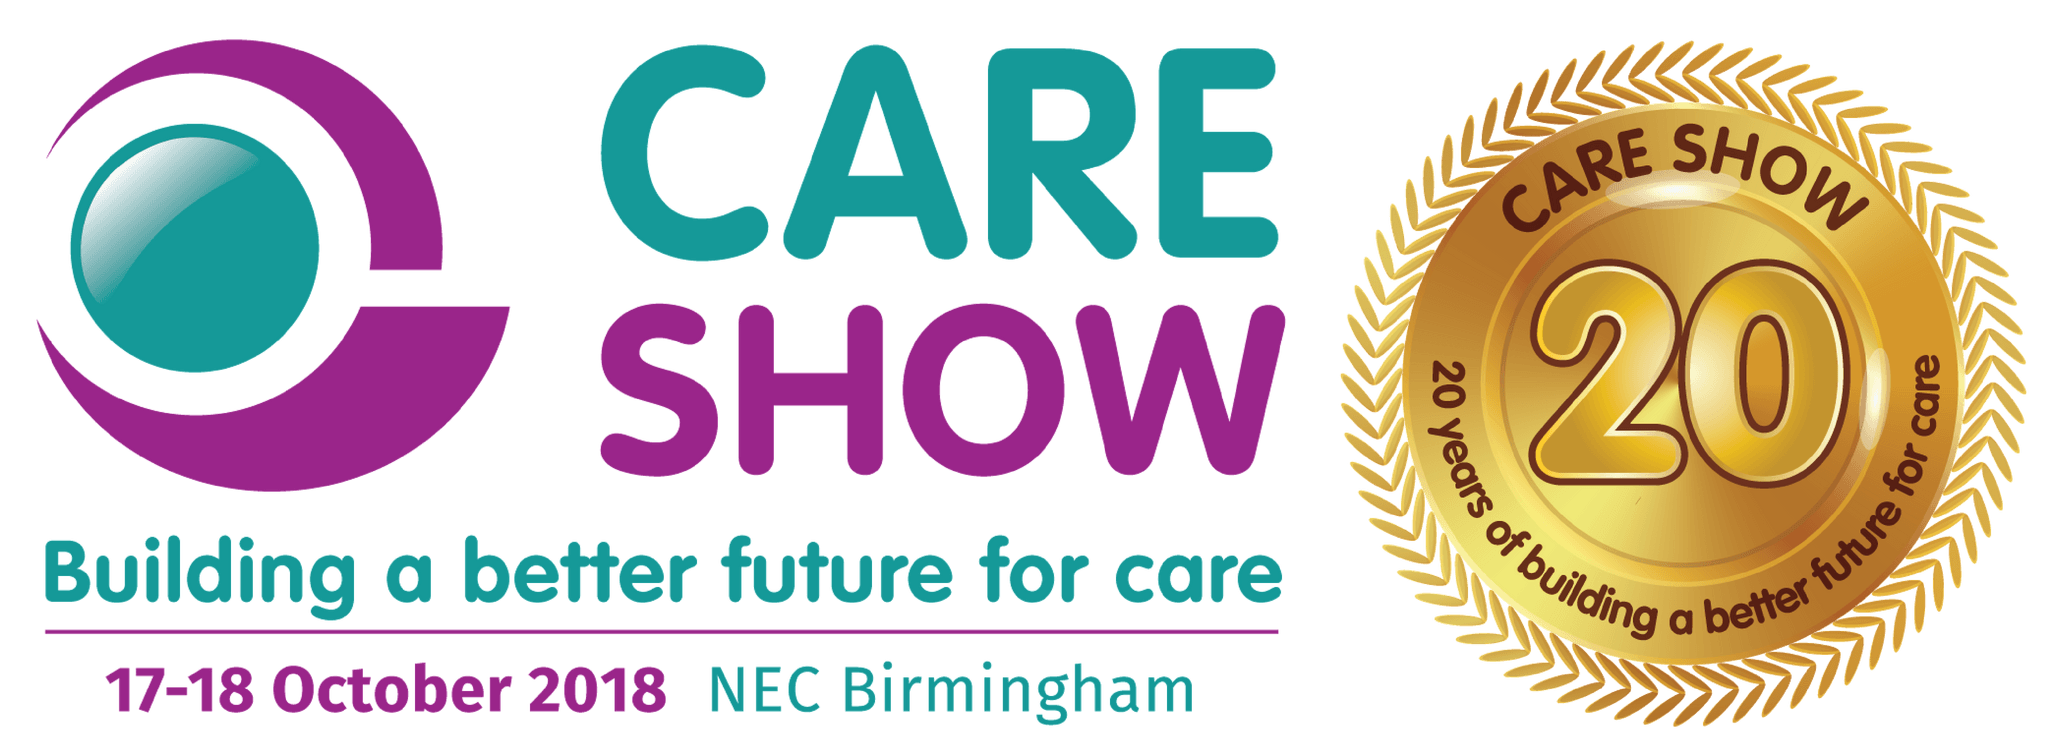 Care Show 2018